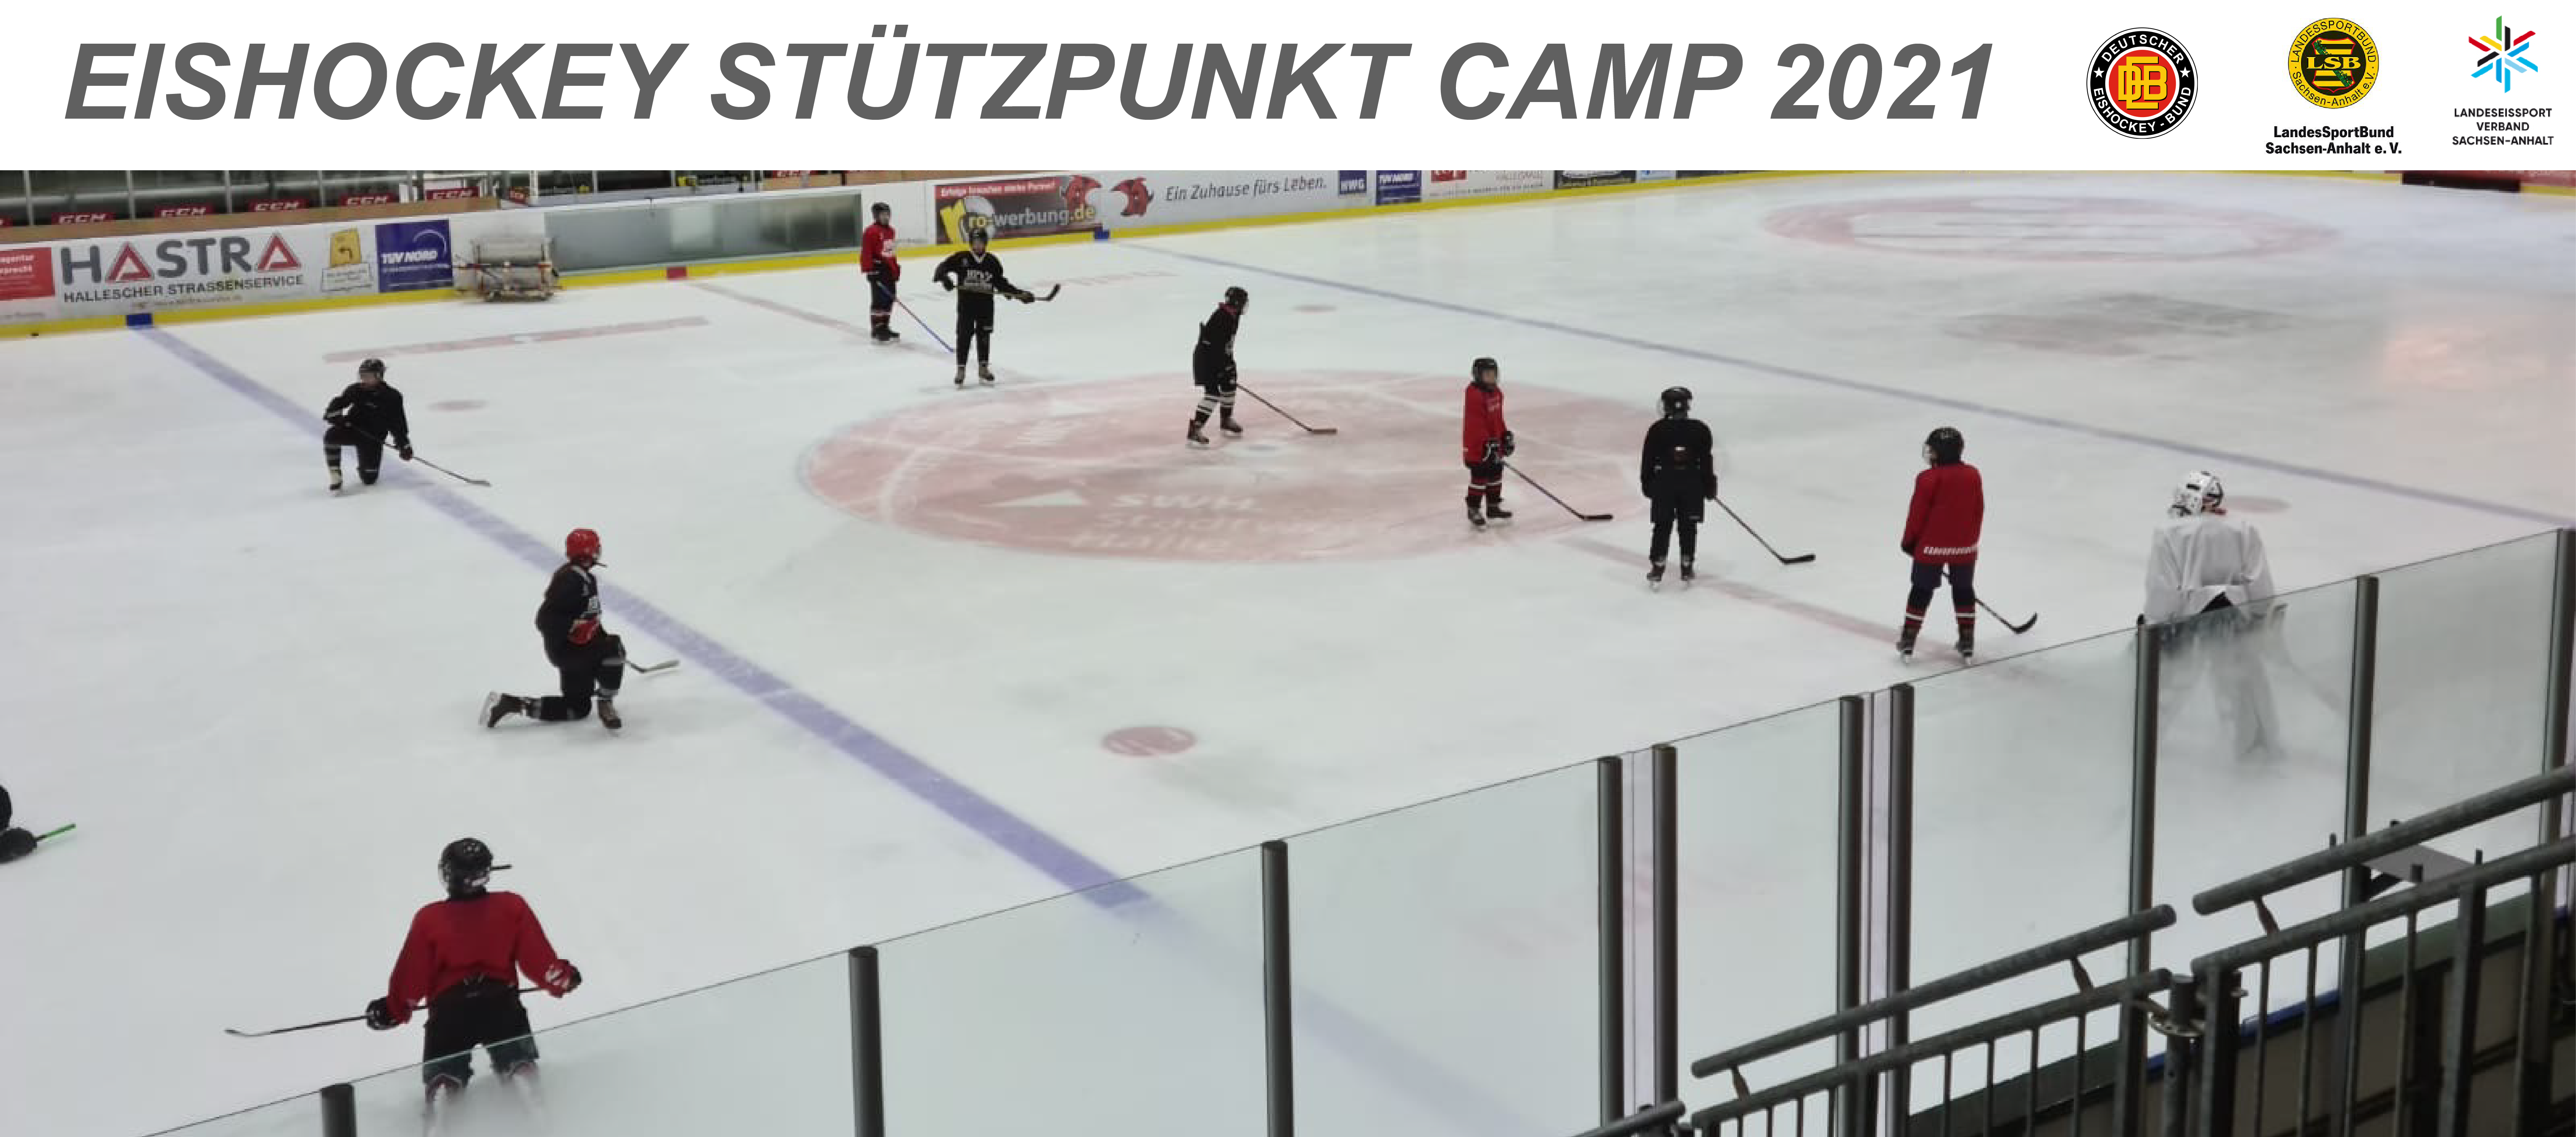 Eishockey Stützpunkt Camp 2021